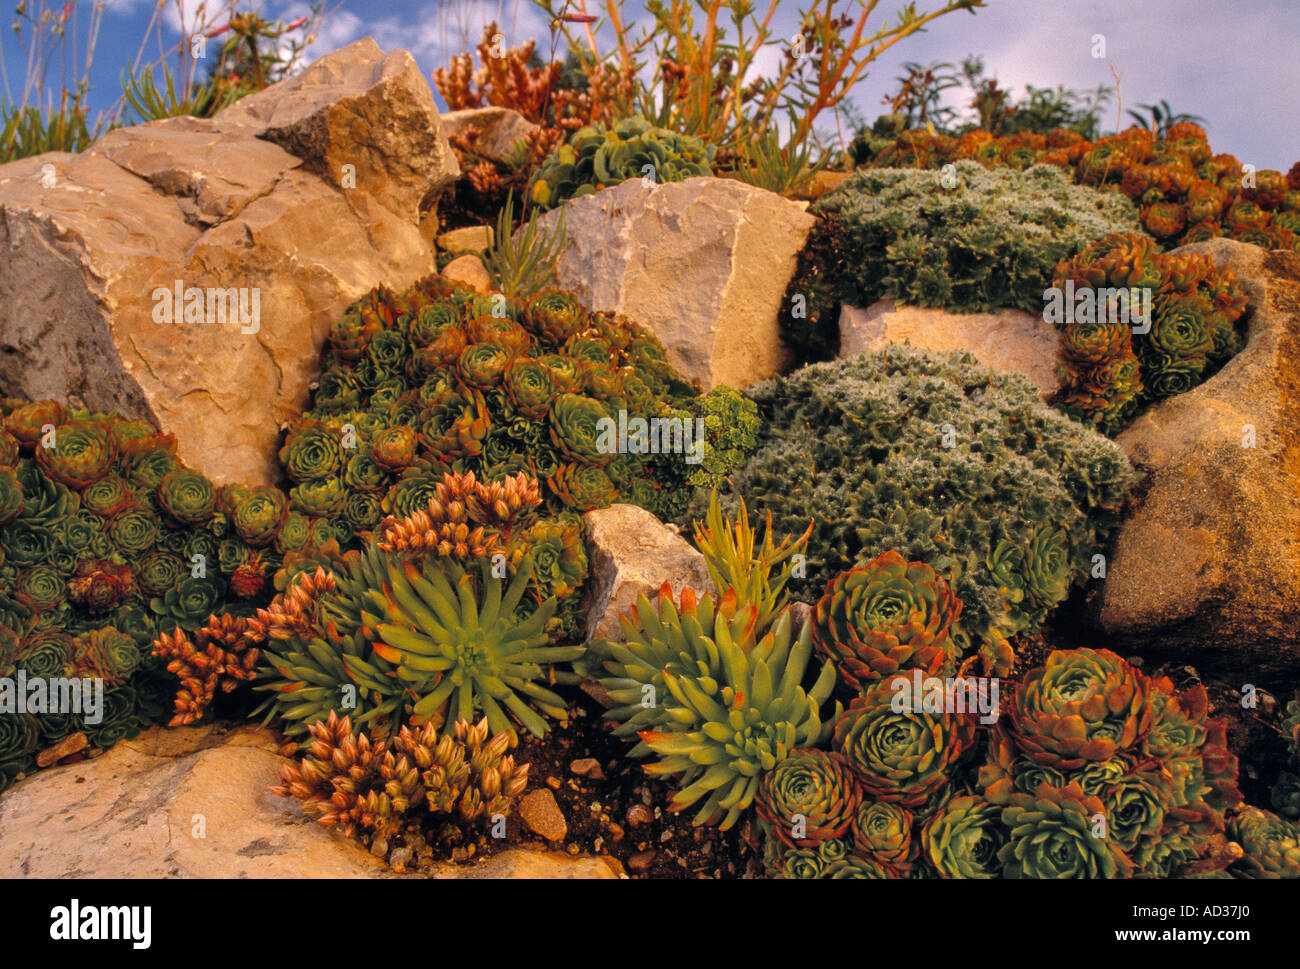 Plants growing in a rock garden in the Denver Botanic Gardens in Denver, Colorado, USA. Stock Photo